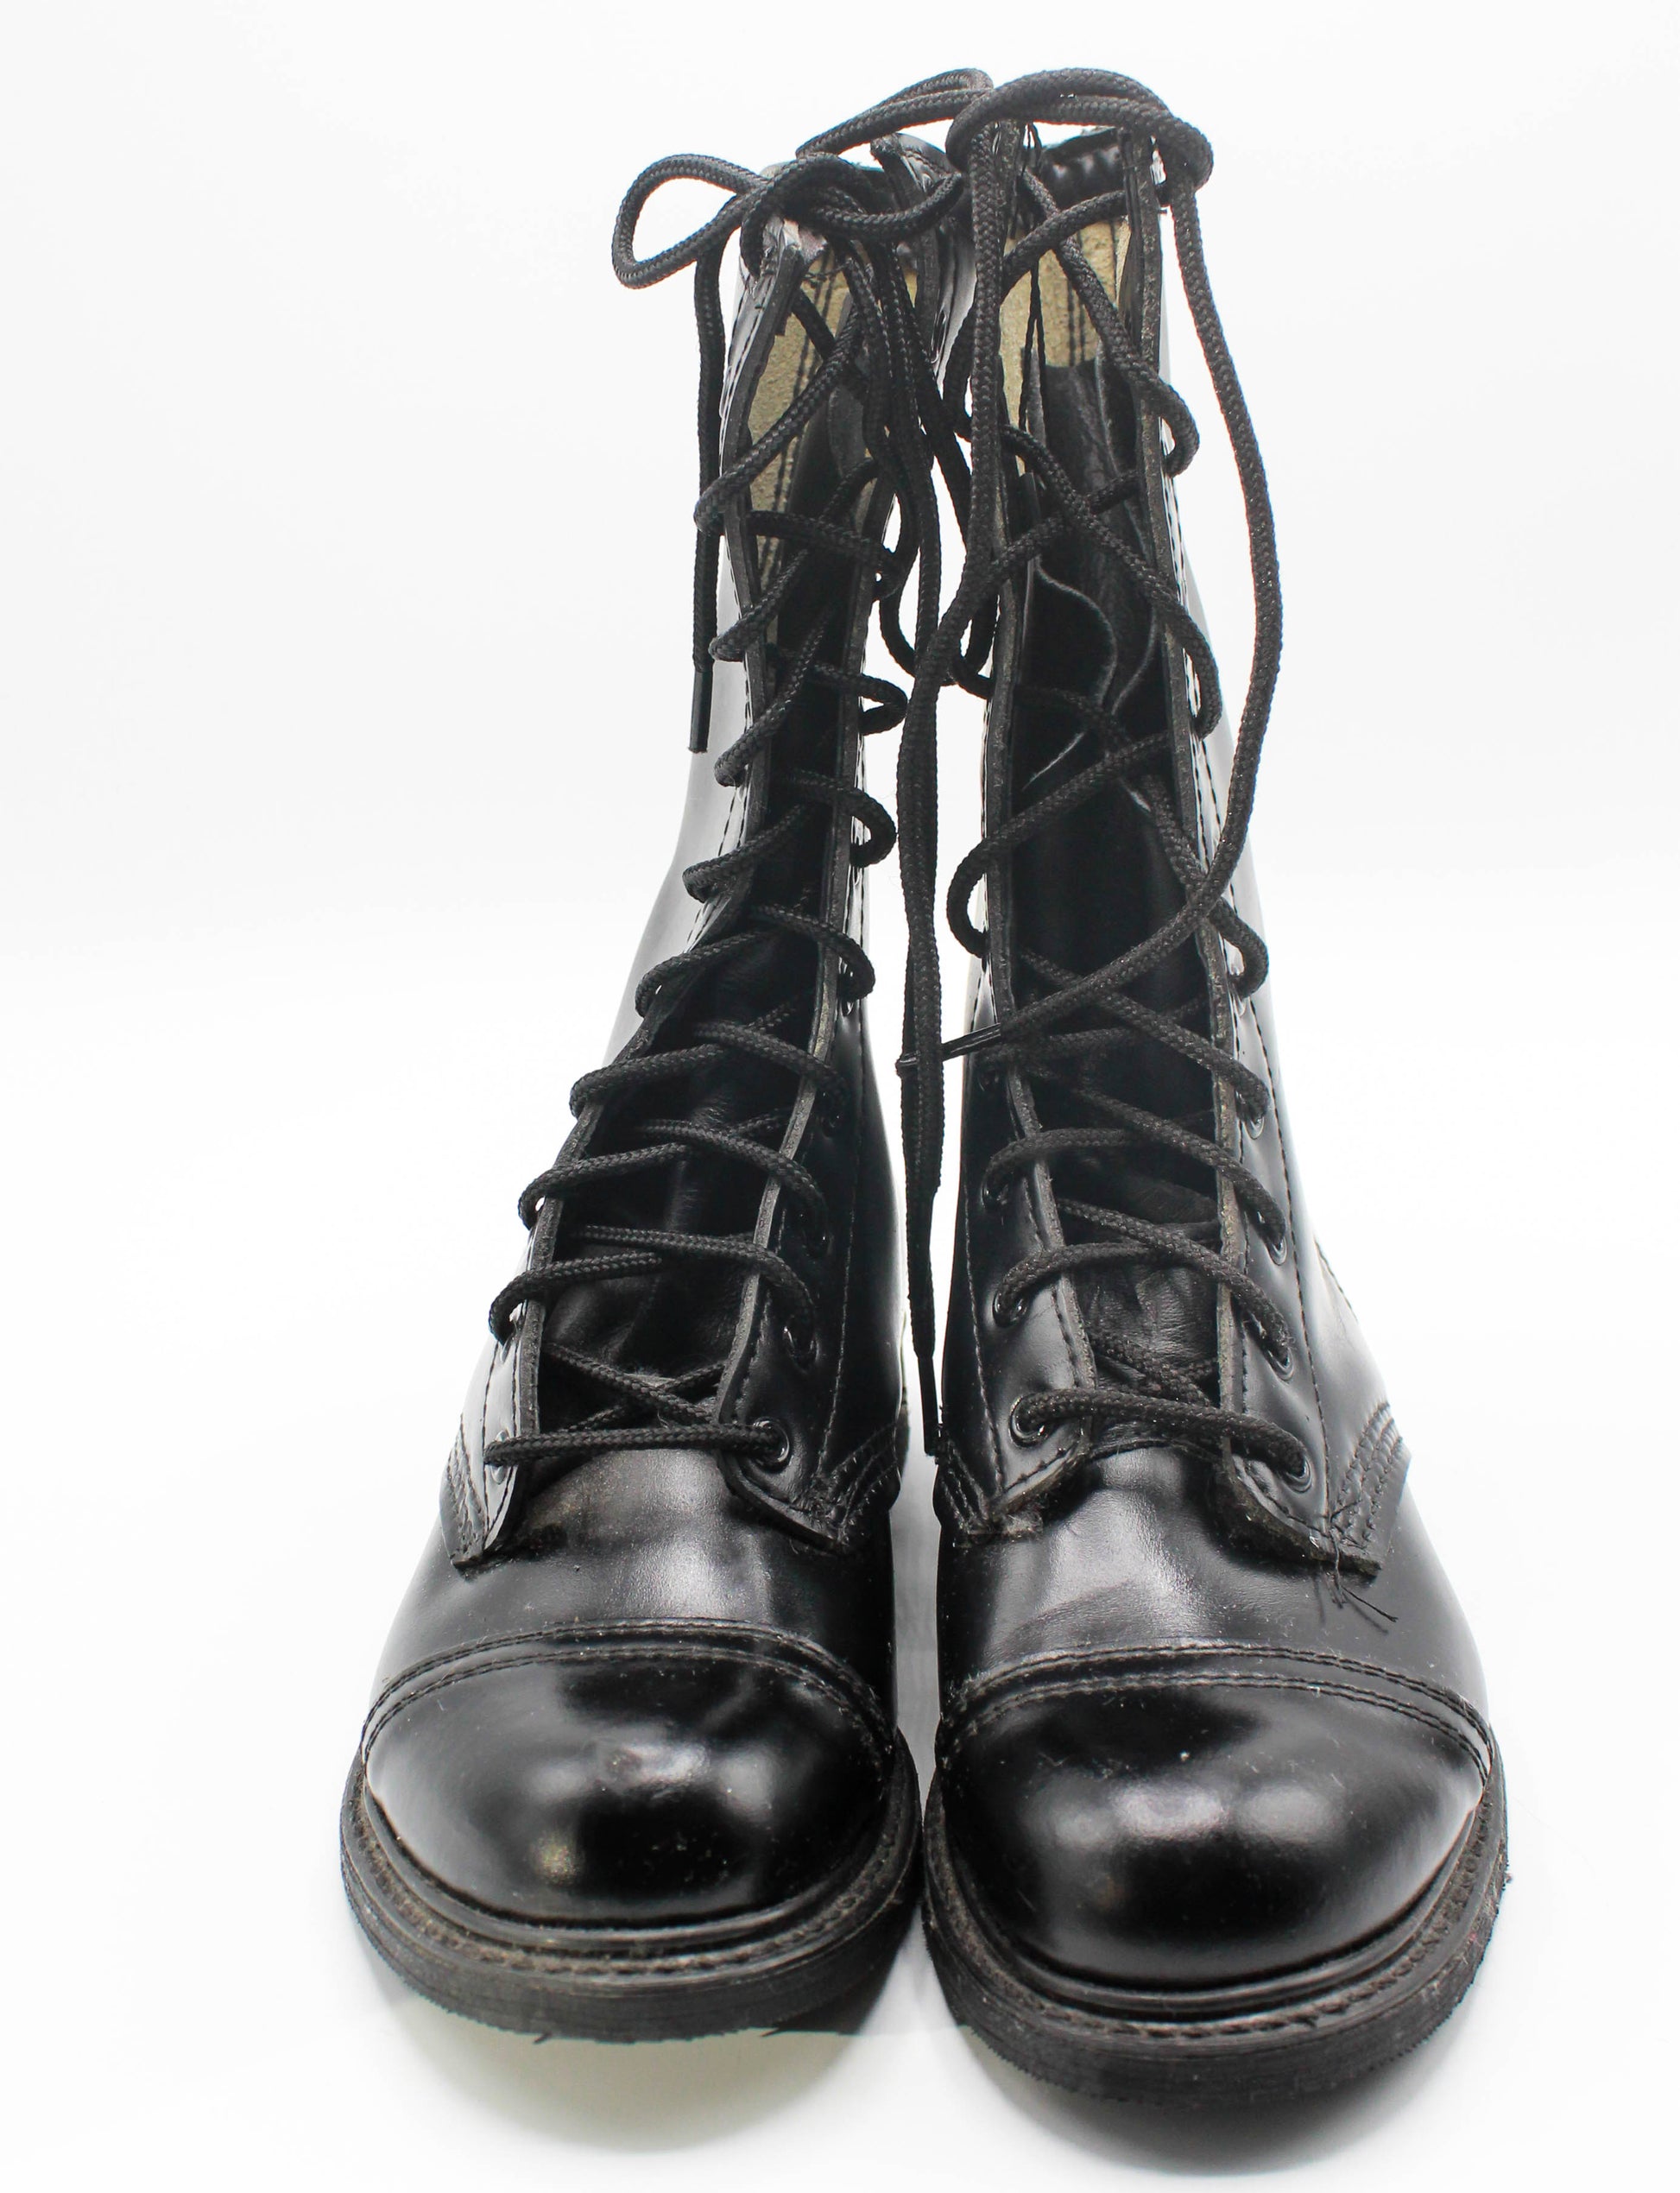 Women's Vintage Jump Boots Leather Combat Biker Dead Stock Black Size 5-6